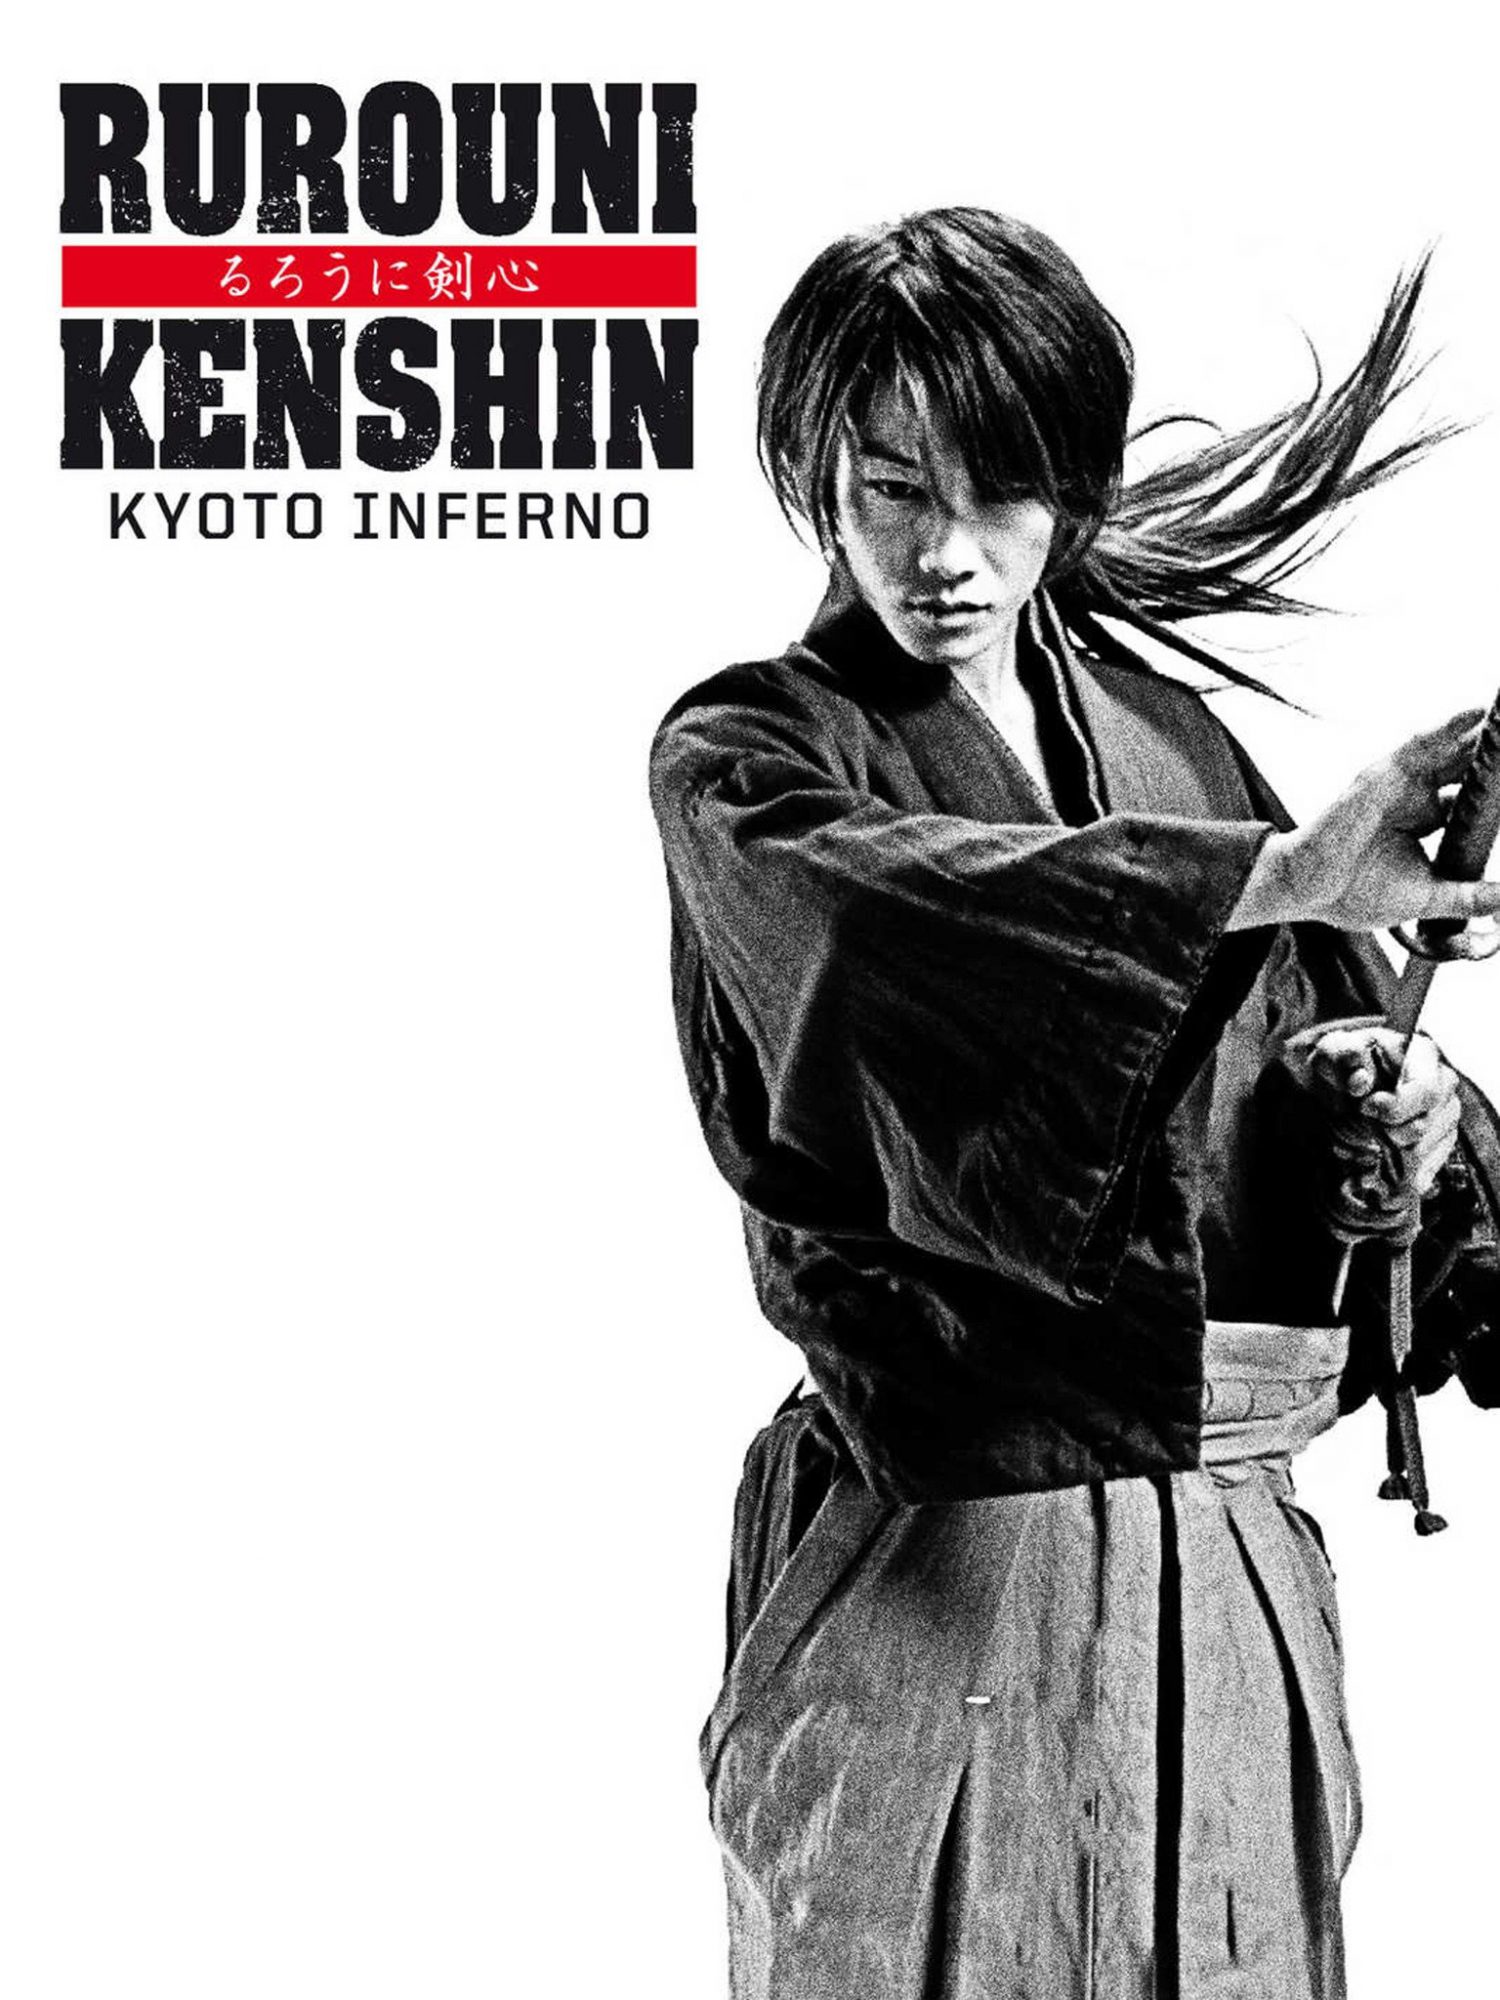 Rurouni Kenshin: Kyoto Inferno [Sub-ITA] (2014)